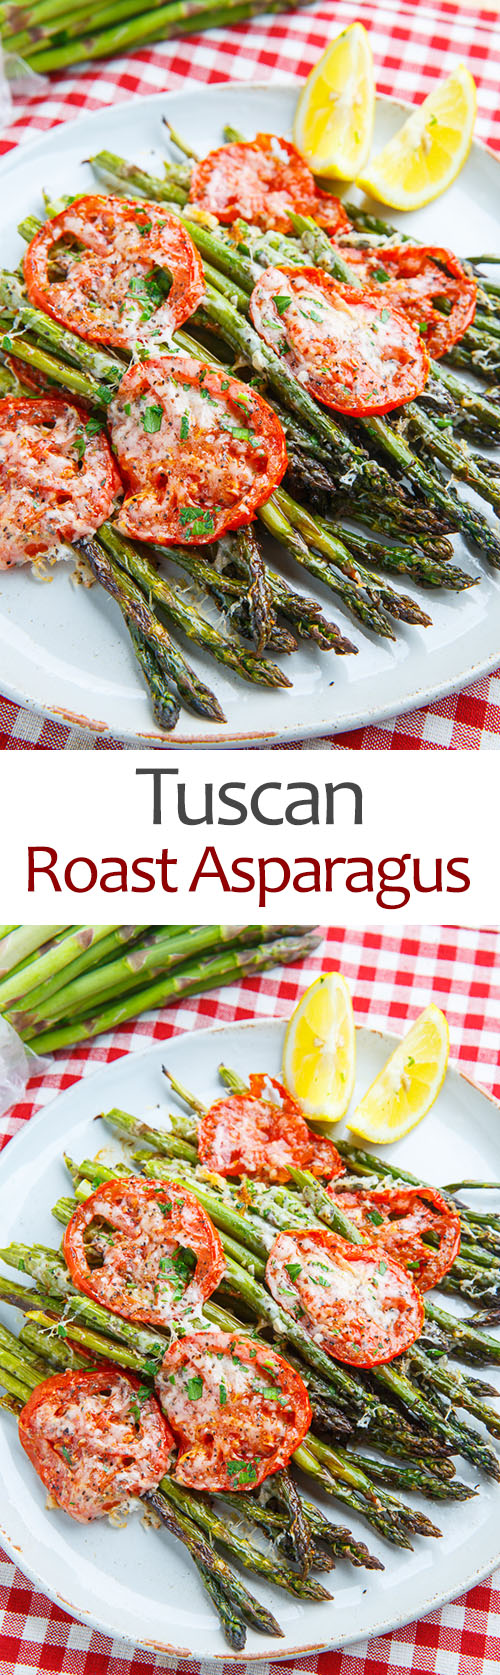 Tuscan Roast Asparagus